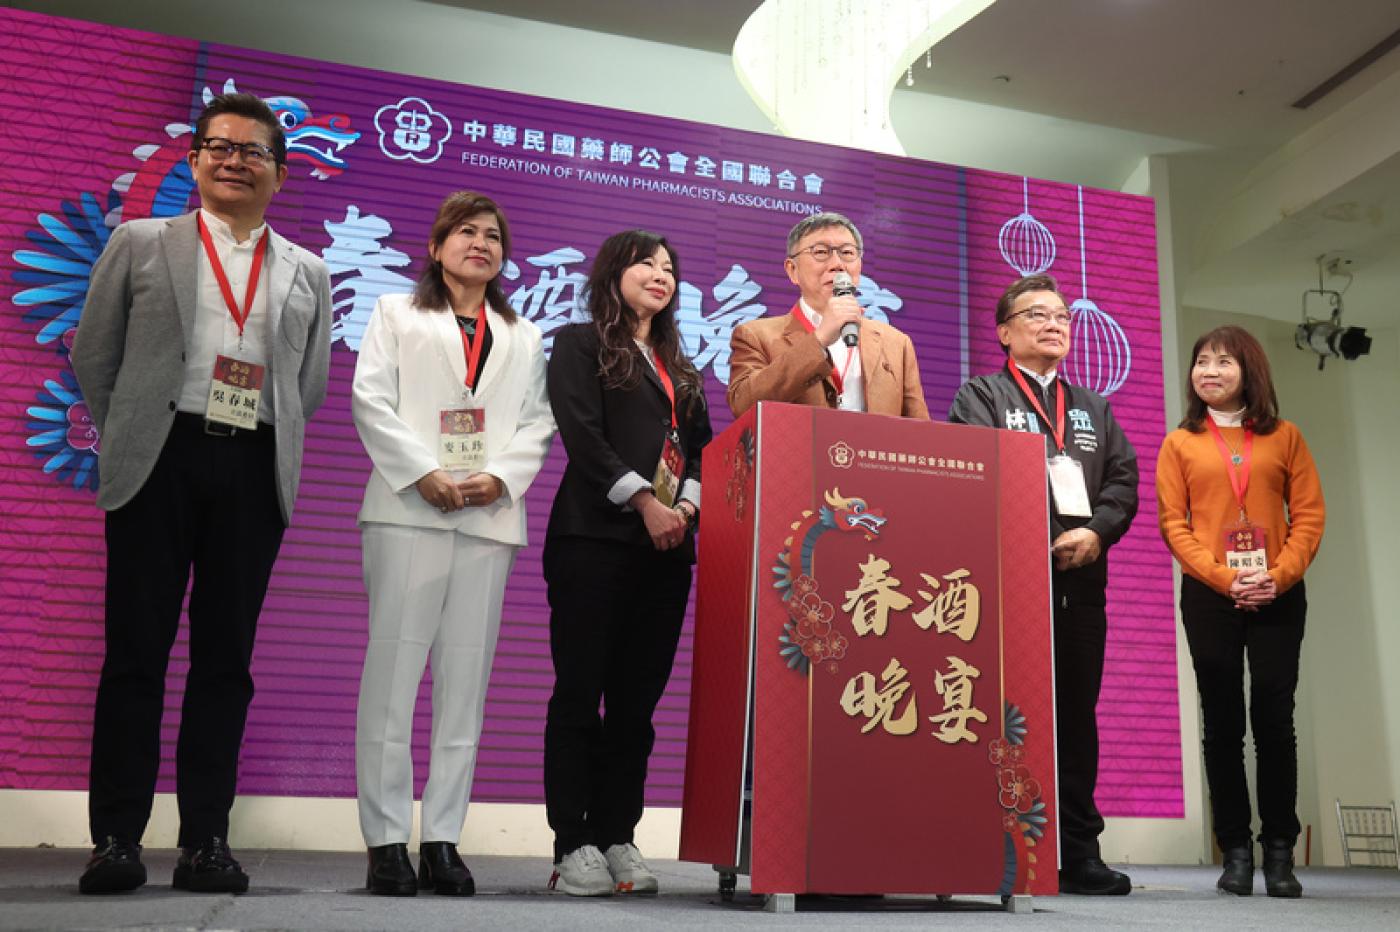 柯文哲25日晚間率黨籍立委等多人在台北共同出席「中華民國藥師公會全國聯合會春酒晚宴」，並登台致詞。中央社